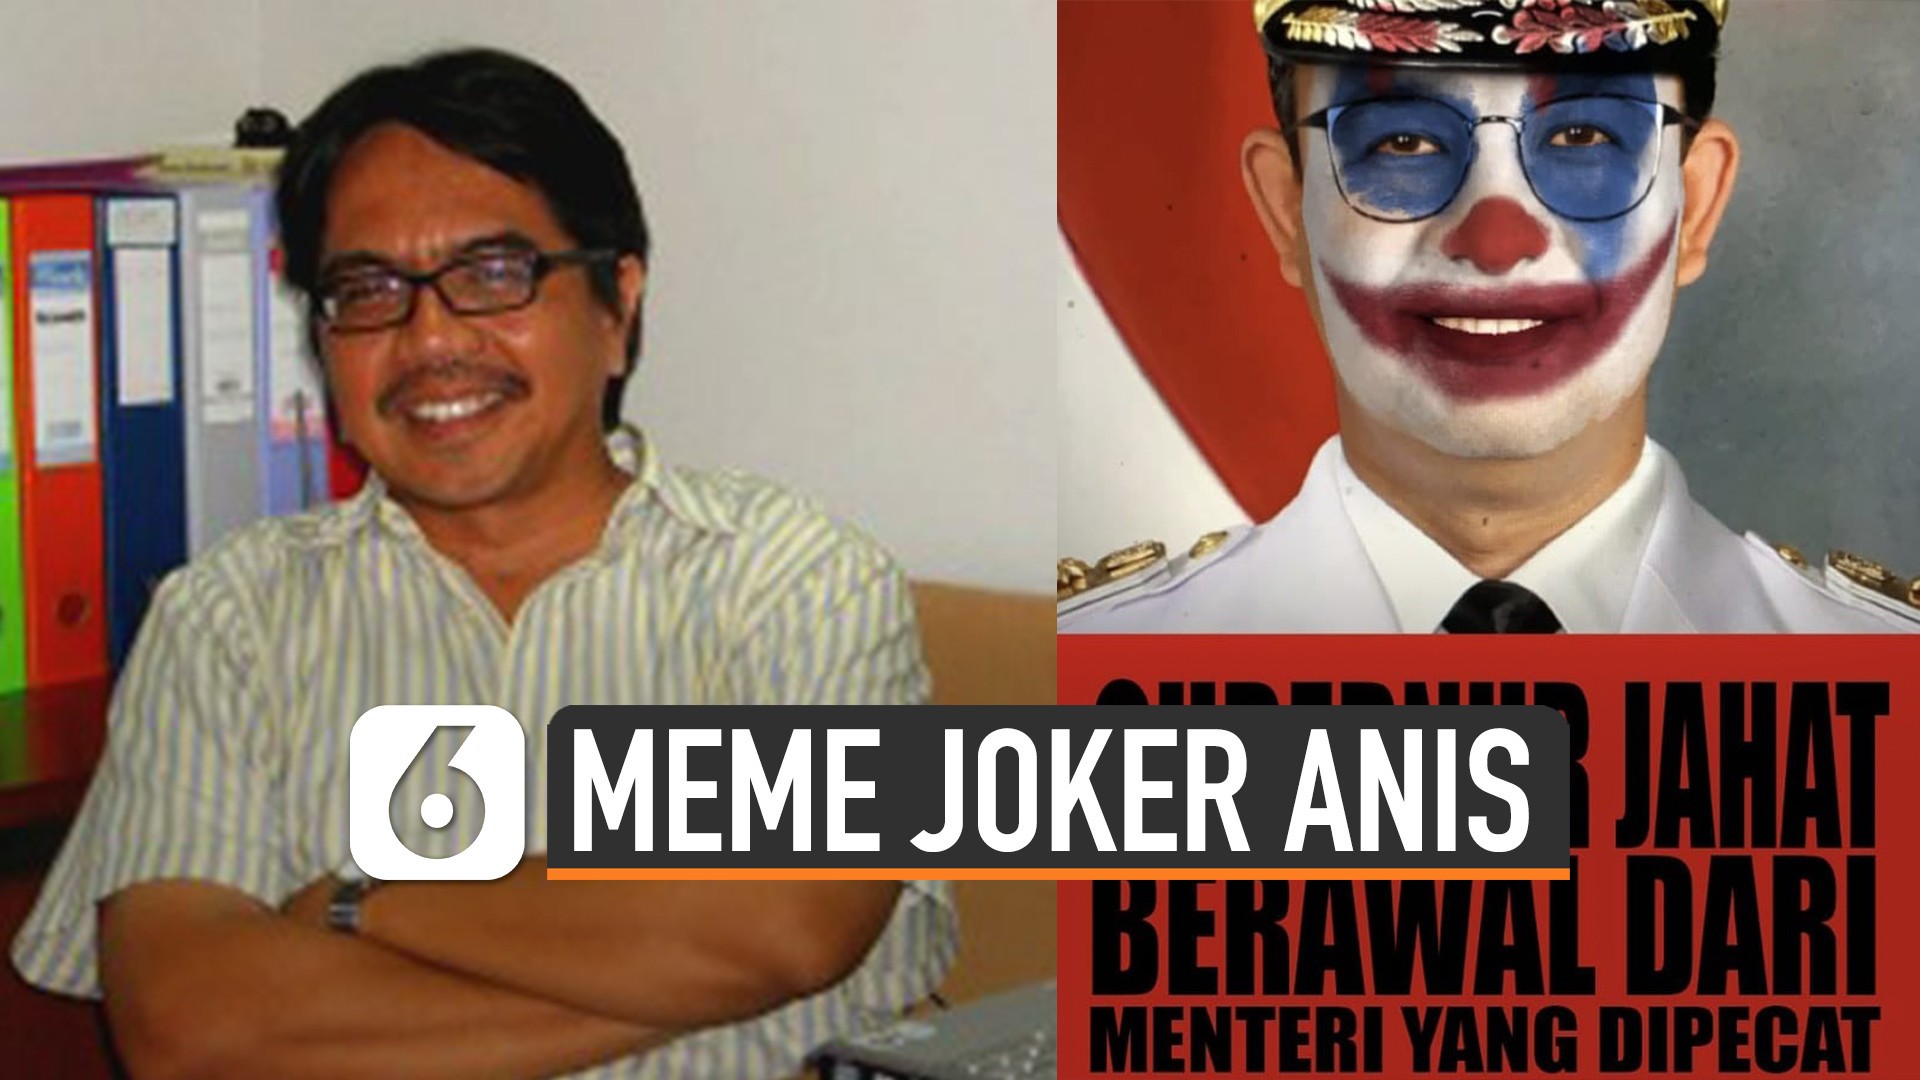 Heboh Meme Joker Anis